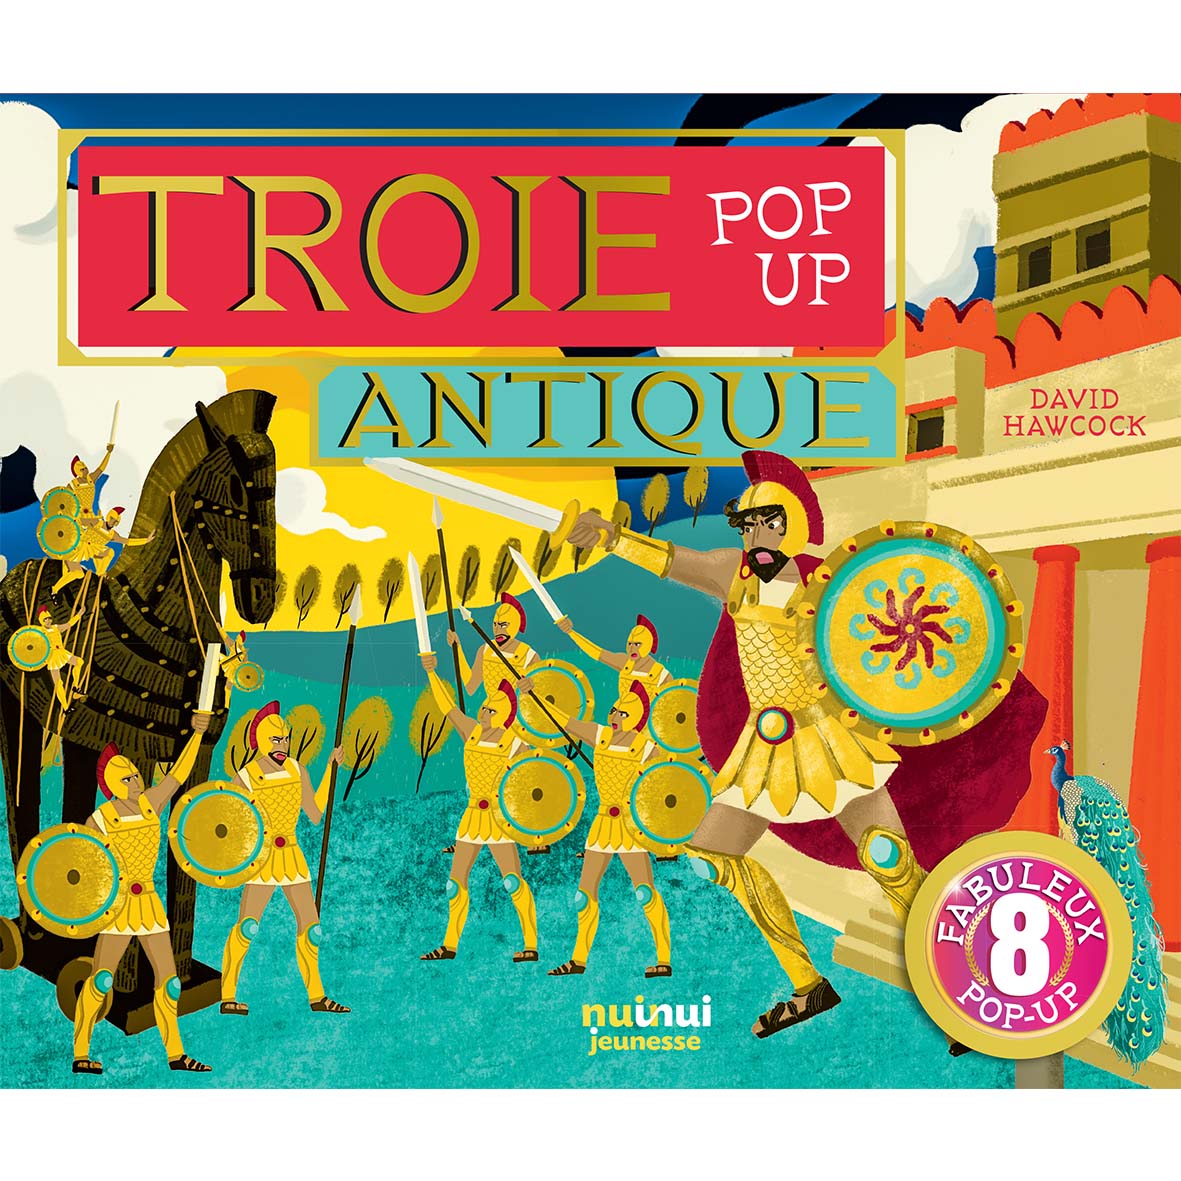 Pop-up historiques - Troie antique